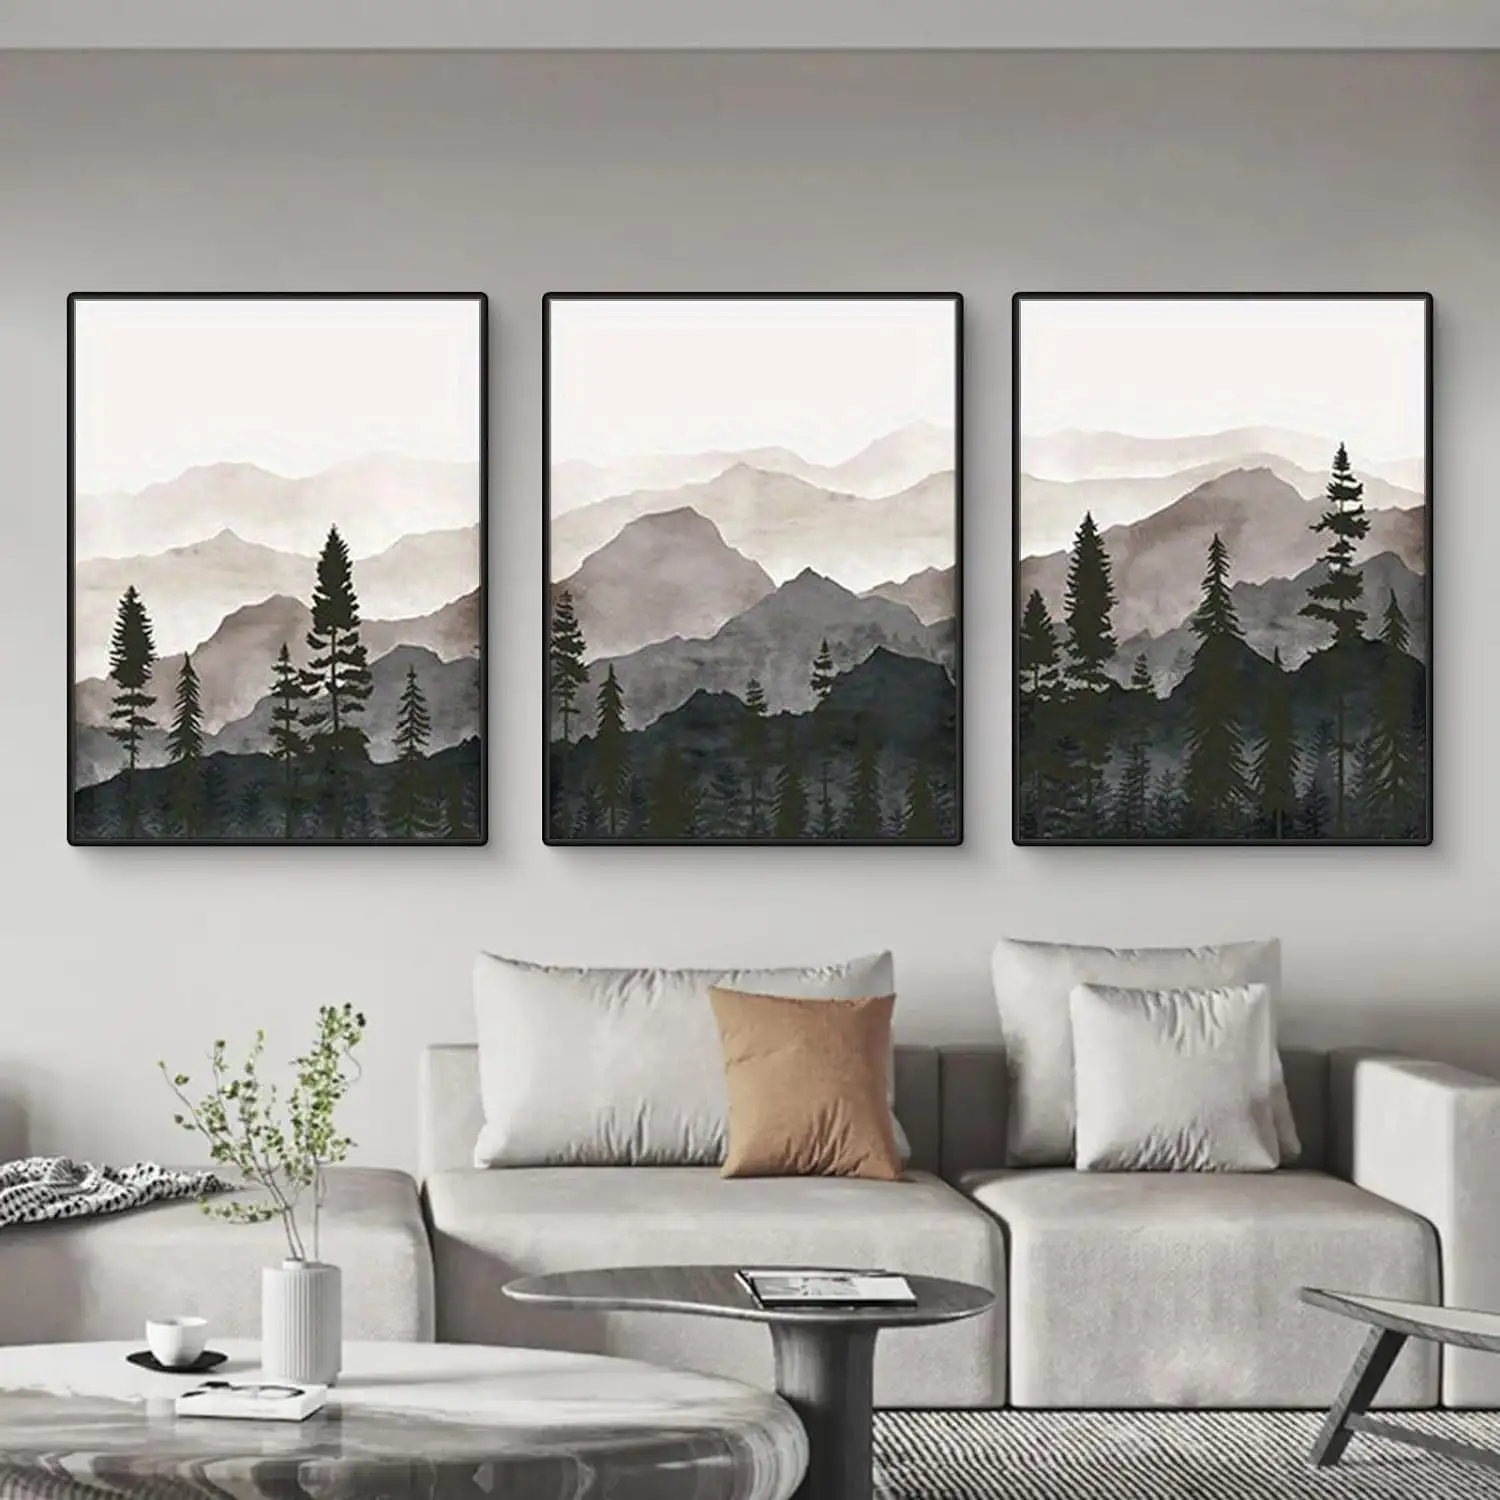 Moderne minimalistische Kunstdruck Berge Gemälde nordisch grau Waldkulisse Triptich-Aufschlag für Hotel Appartment Dekoration